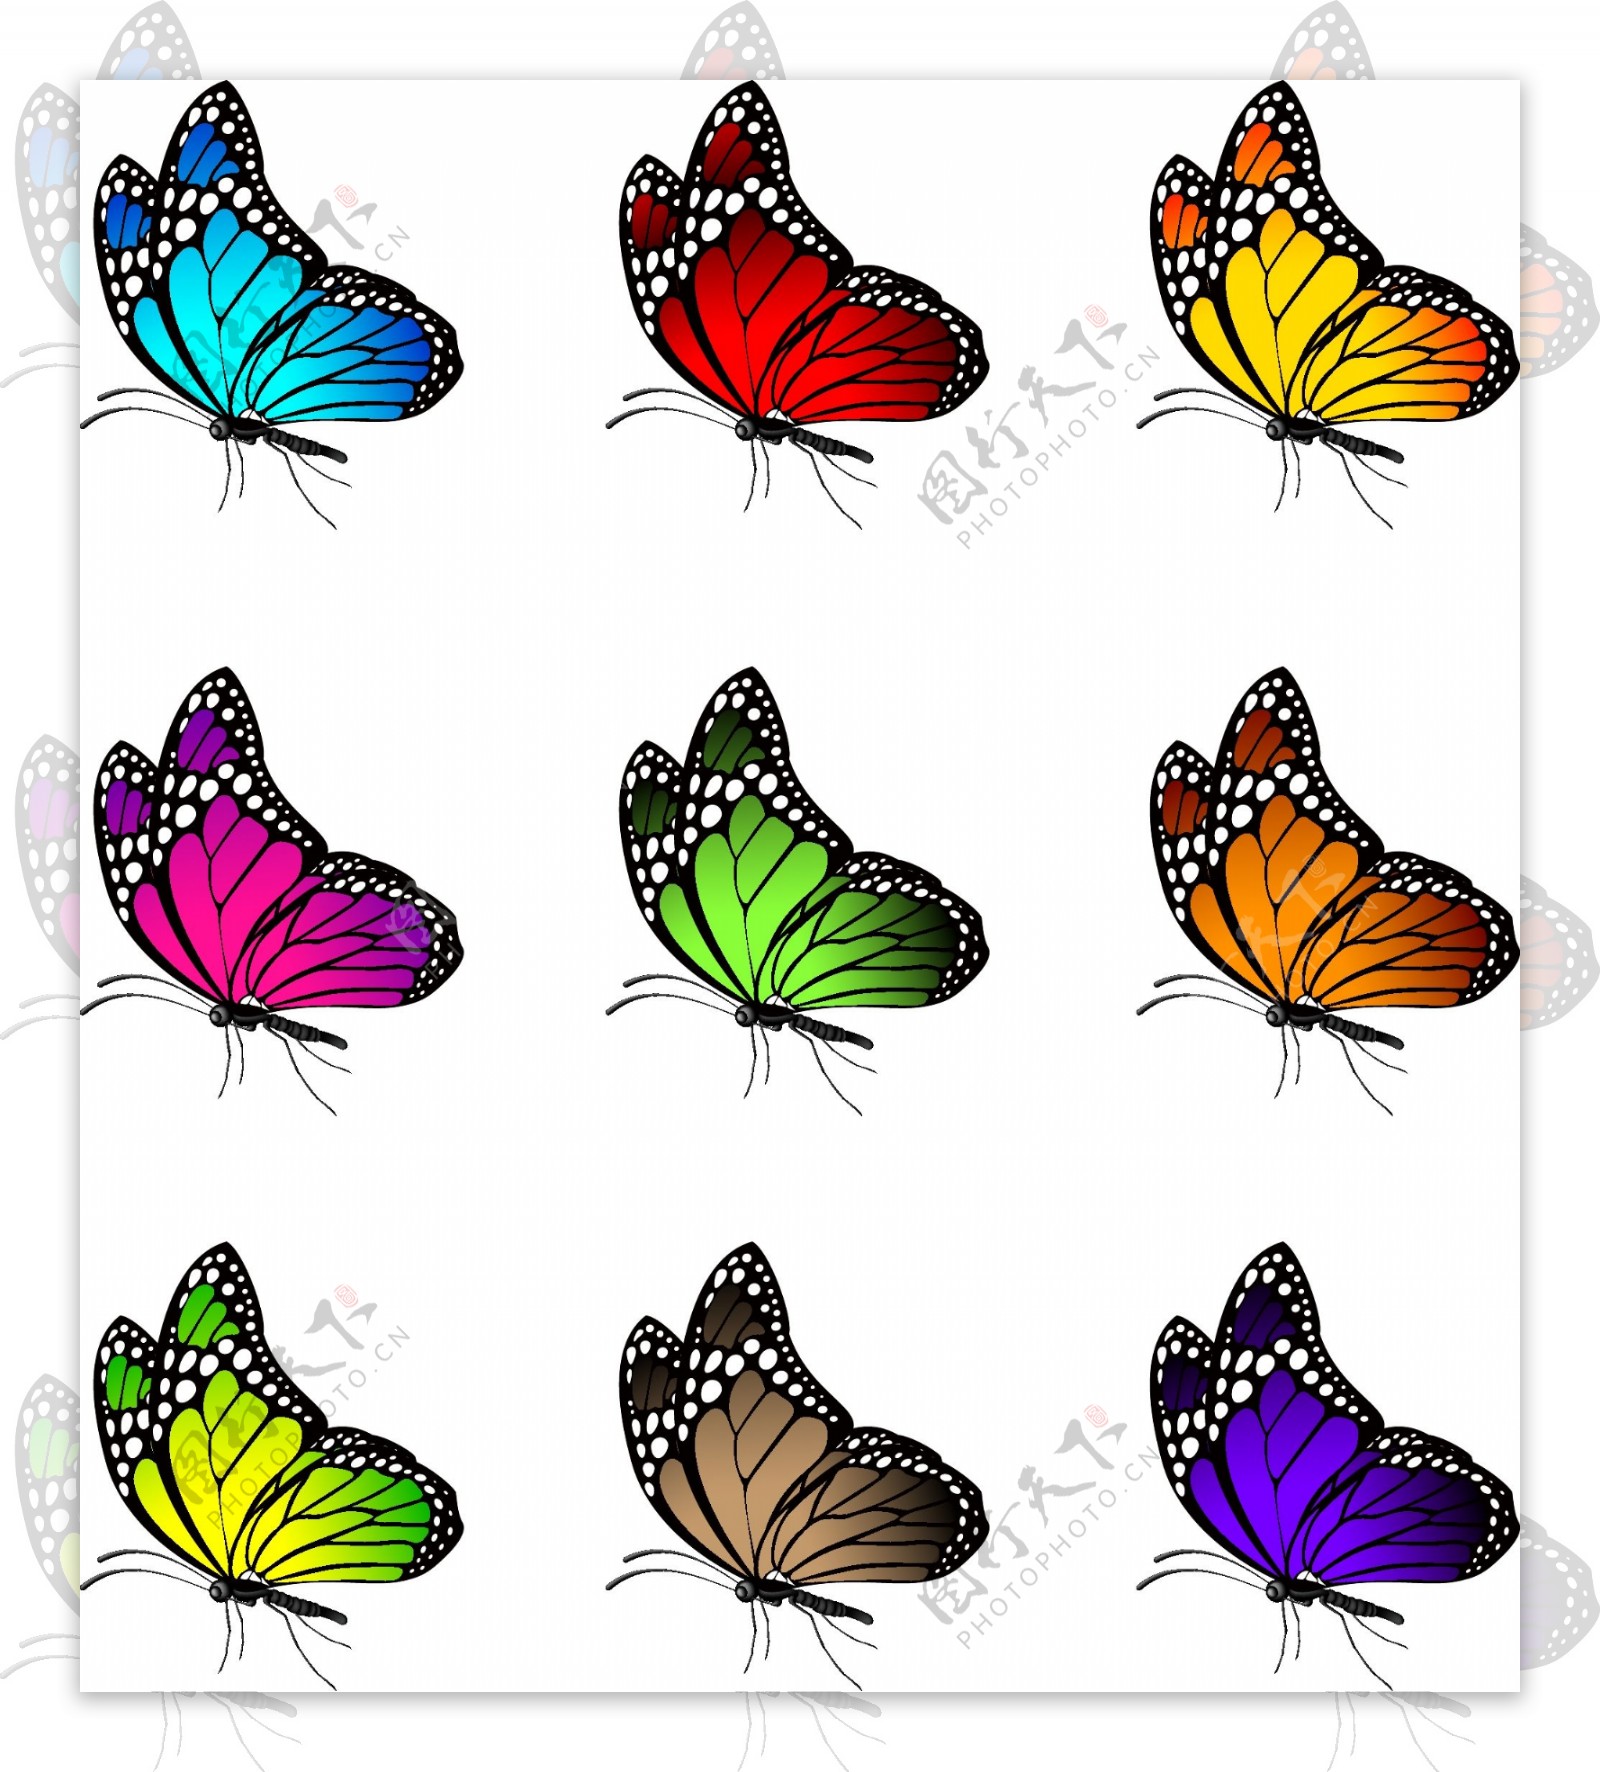 彩色蝴蝶侧面矢量素材